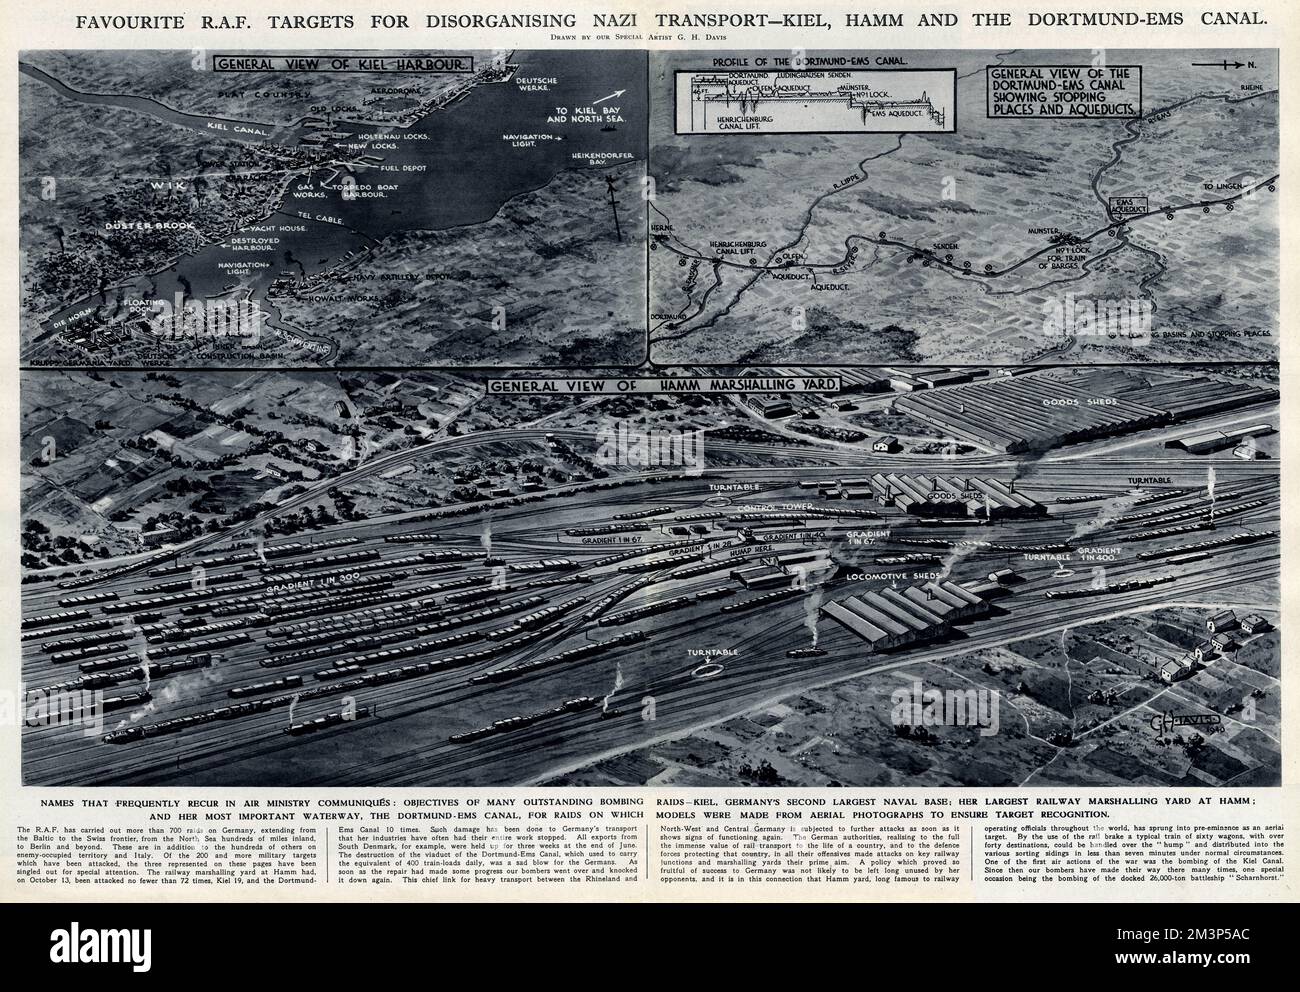 Bevorzugte RAF-Ziele zur Desorganisierung des deutschen Verkehrs -- Kieler Marinestützpunkt, Hammer Rangierbahnhof und Dortmund-Ems-Kanal. Datum: 1940 Stockfoto